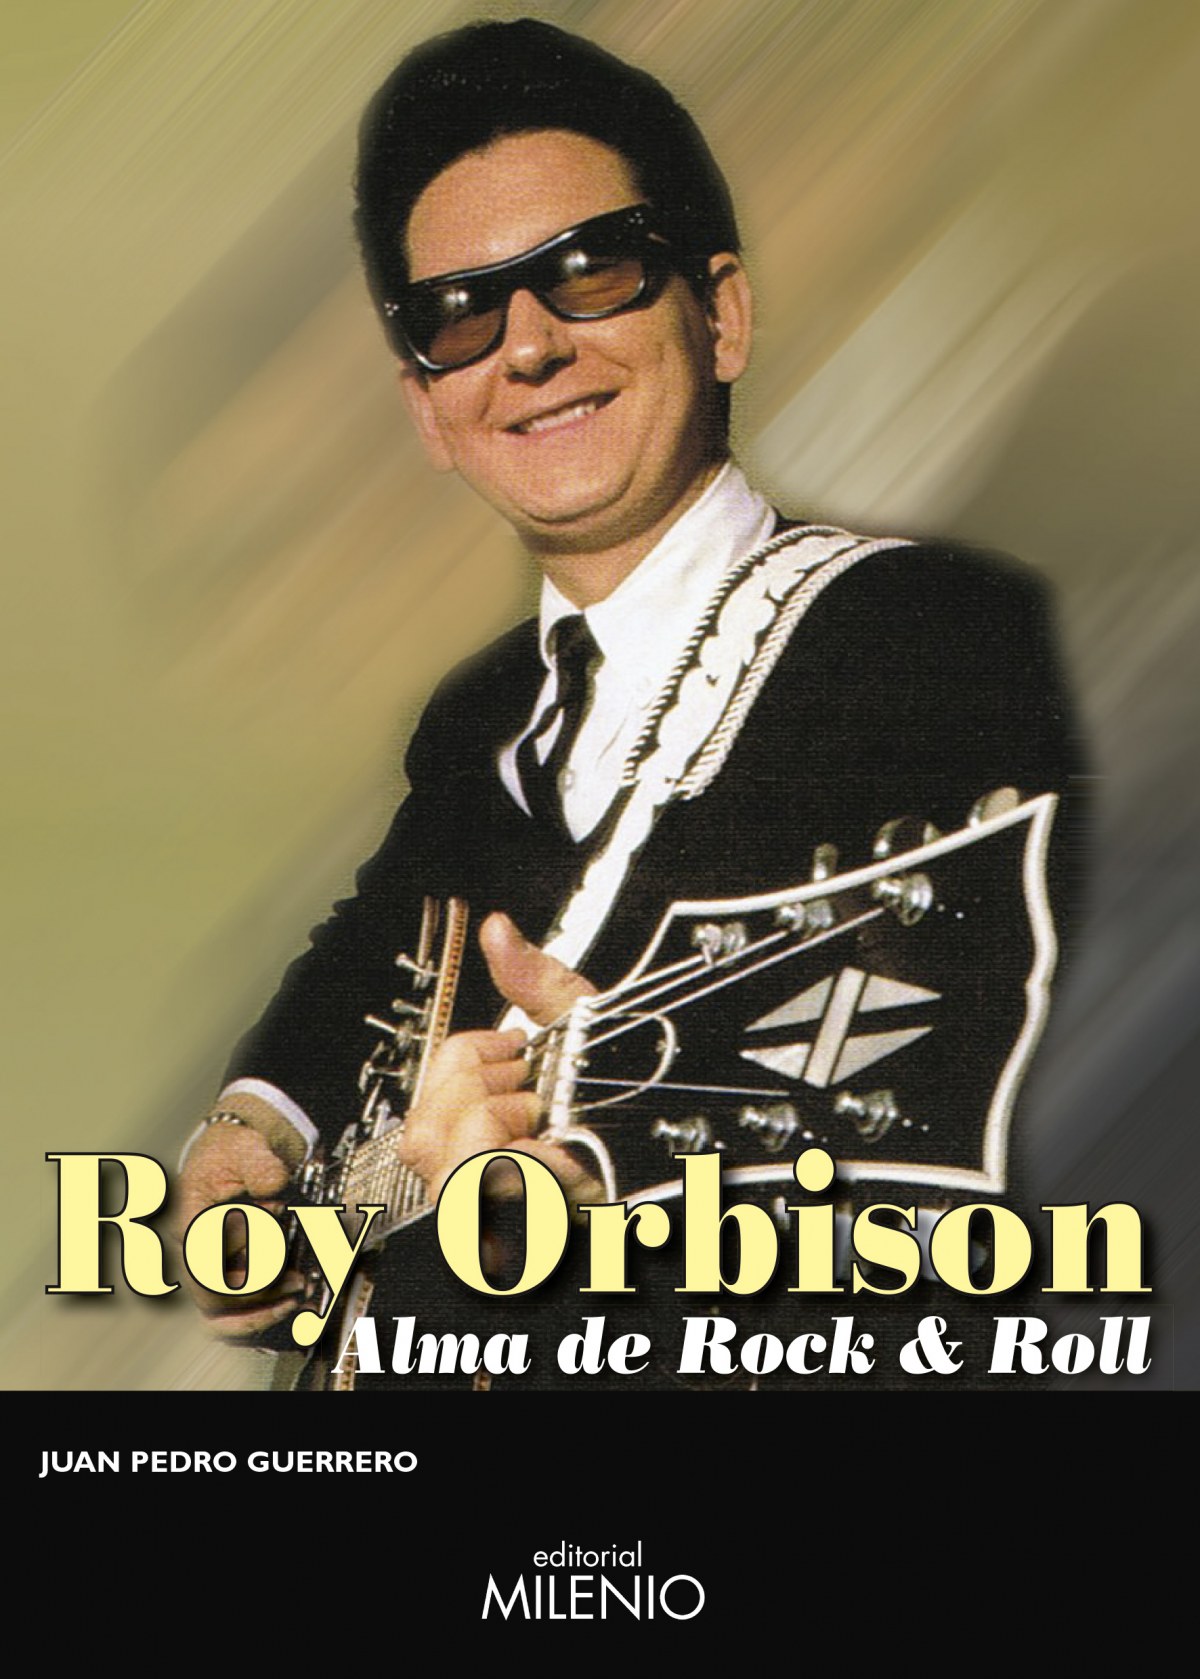 ROY ORBISON Alma de Rock & Roll - Gerrerro Martín, Juan Pedro